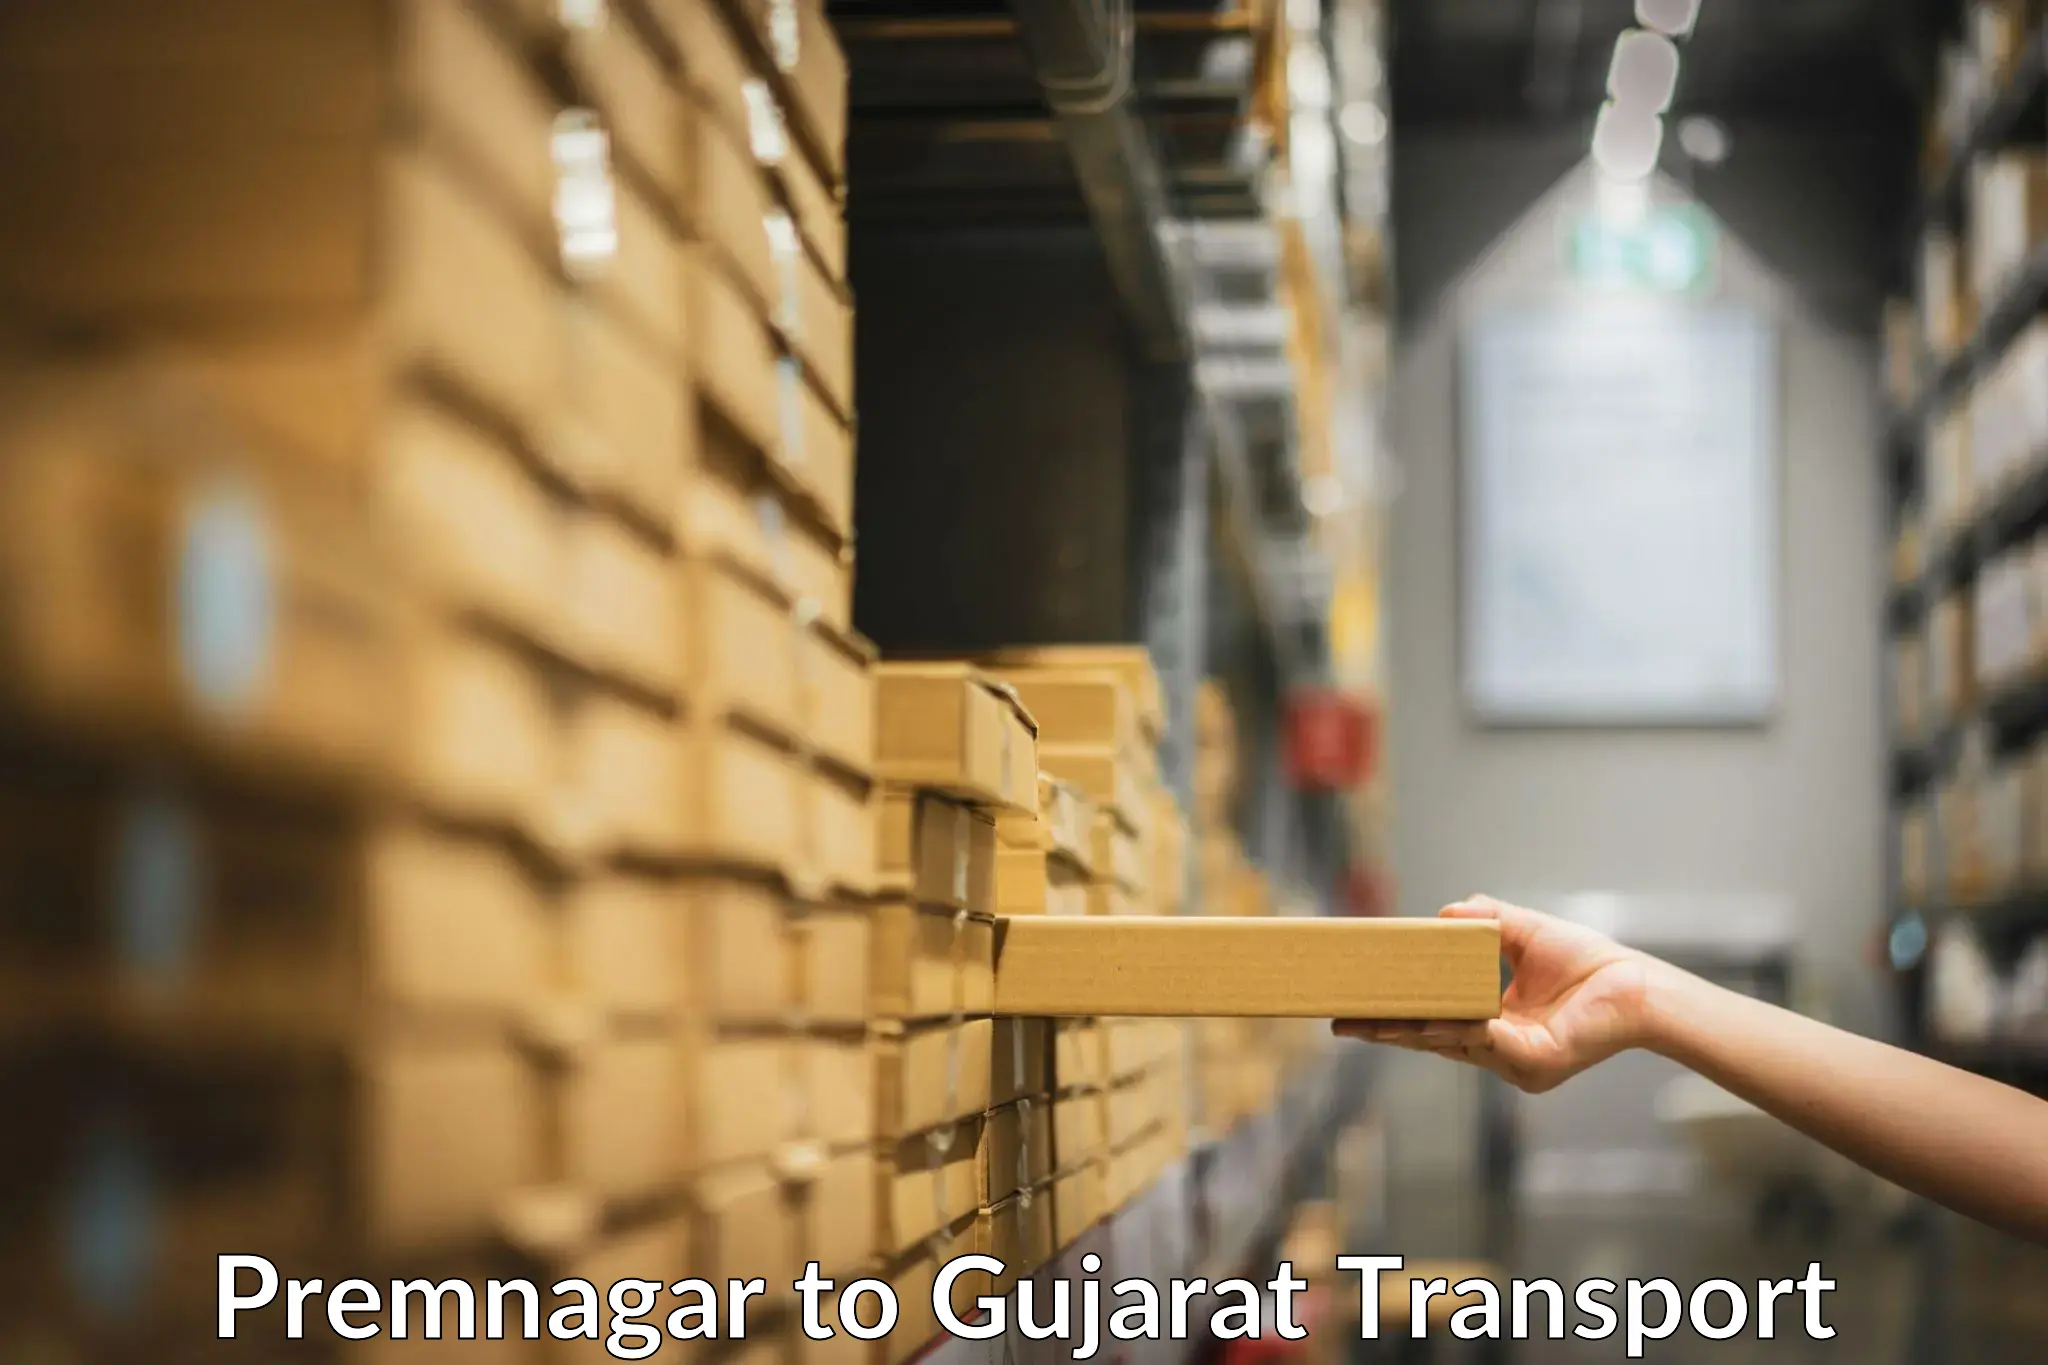 Commercial transport service Premnagar to GIDC